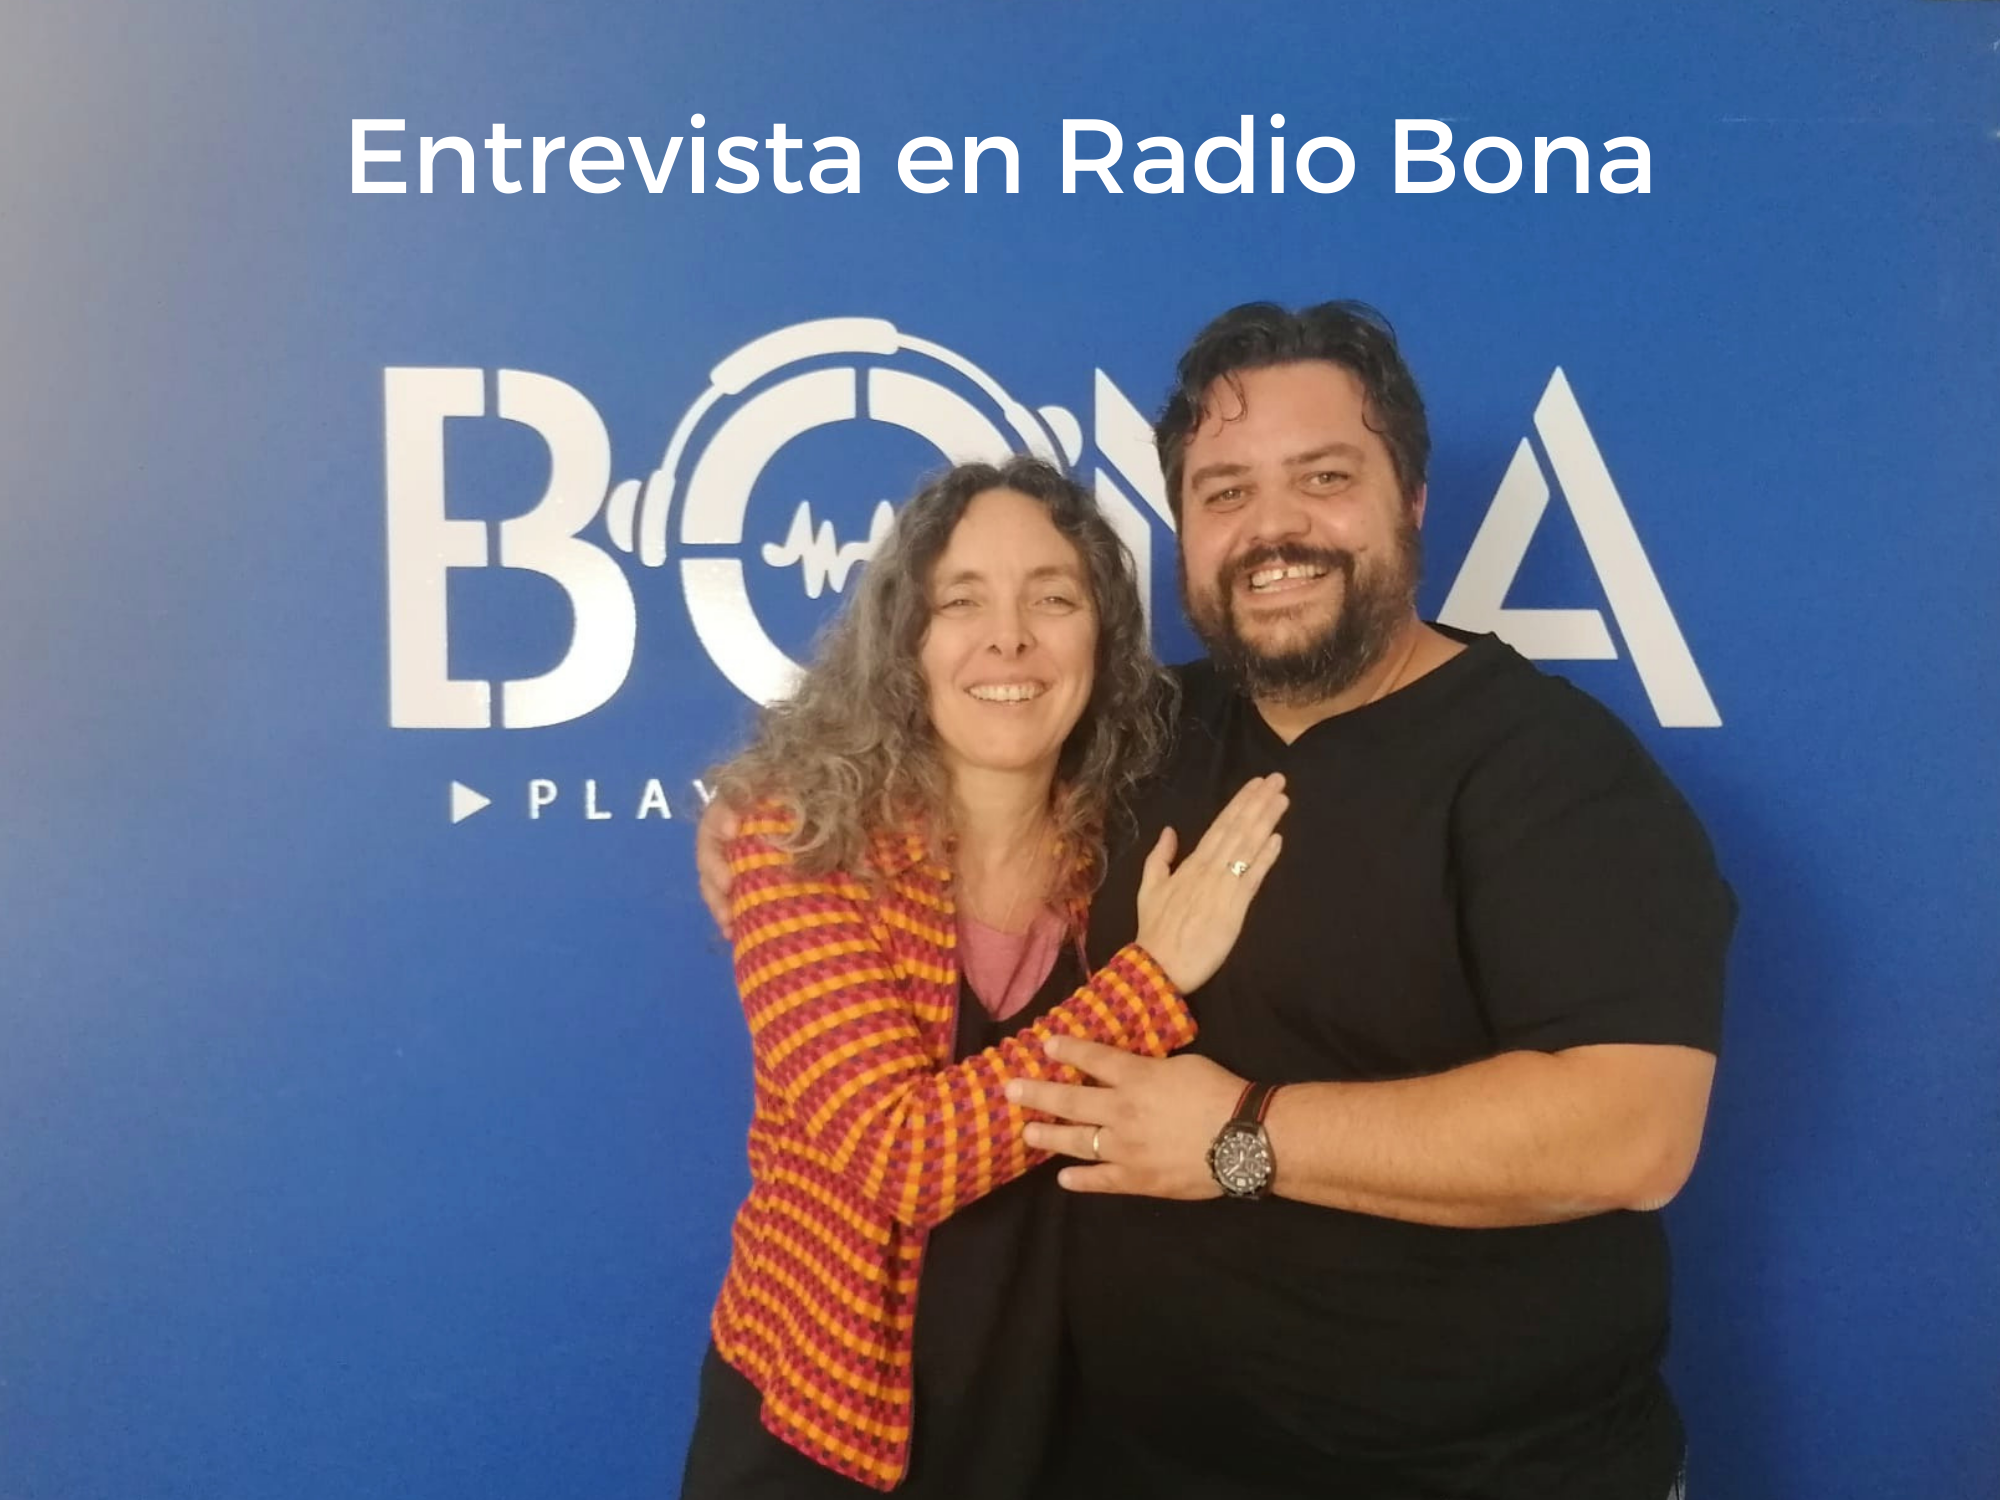 pao goso radio bona Barcelona el galpón podcast. supera el miedo escénico. supera el miedo a exponerte. confianza personal. comunicación creativa. Expresa #TuNotaUnica